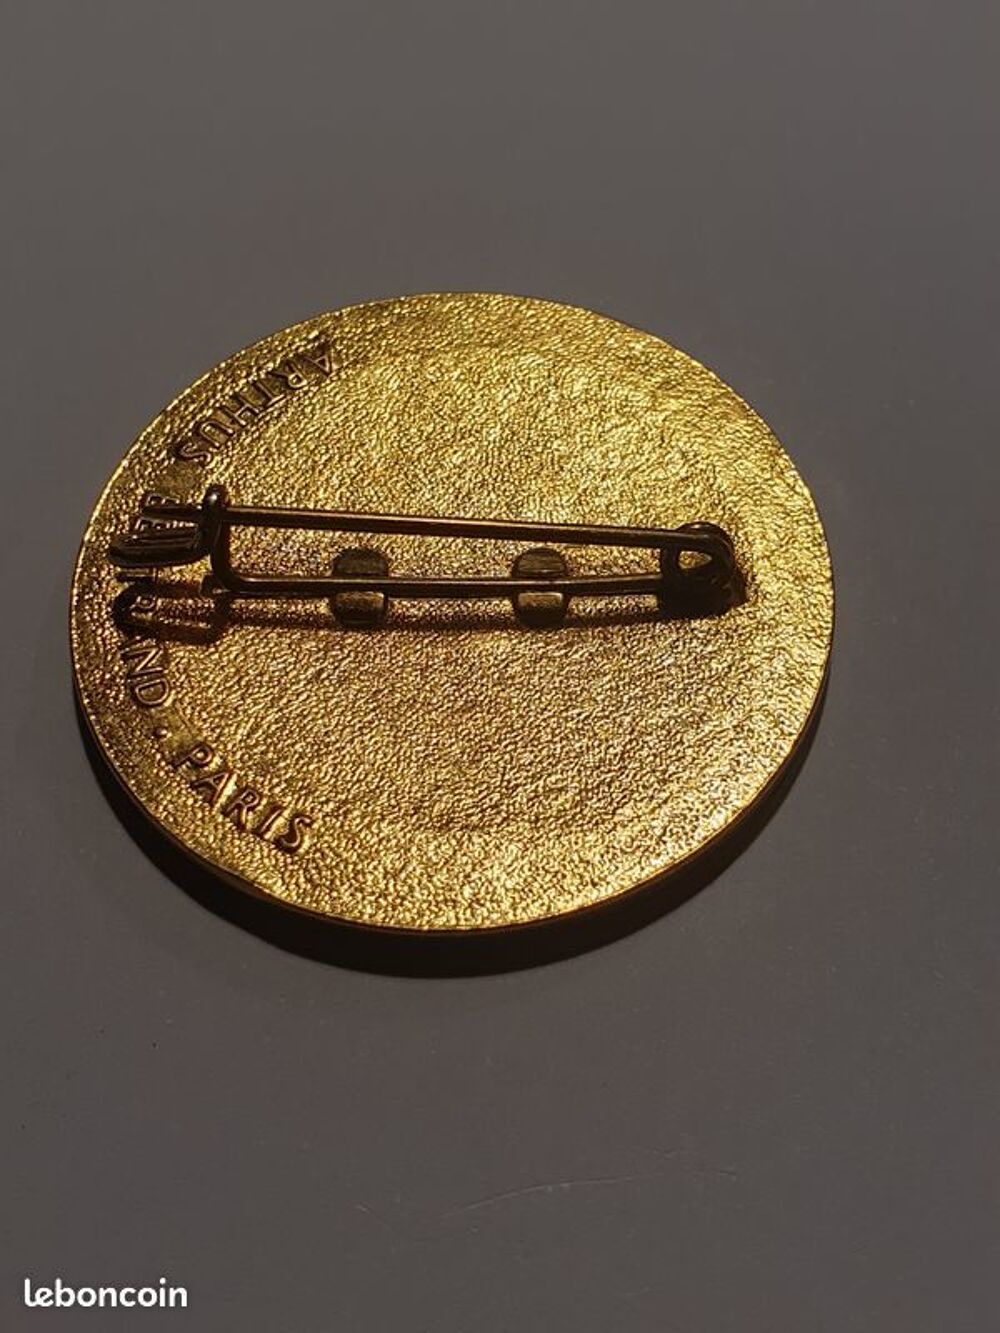 Medaille J.O. Grenoble 68 Arthus Bertrand 